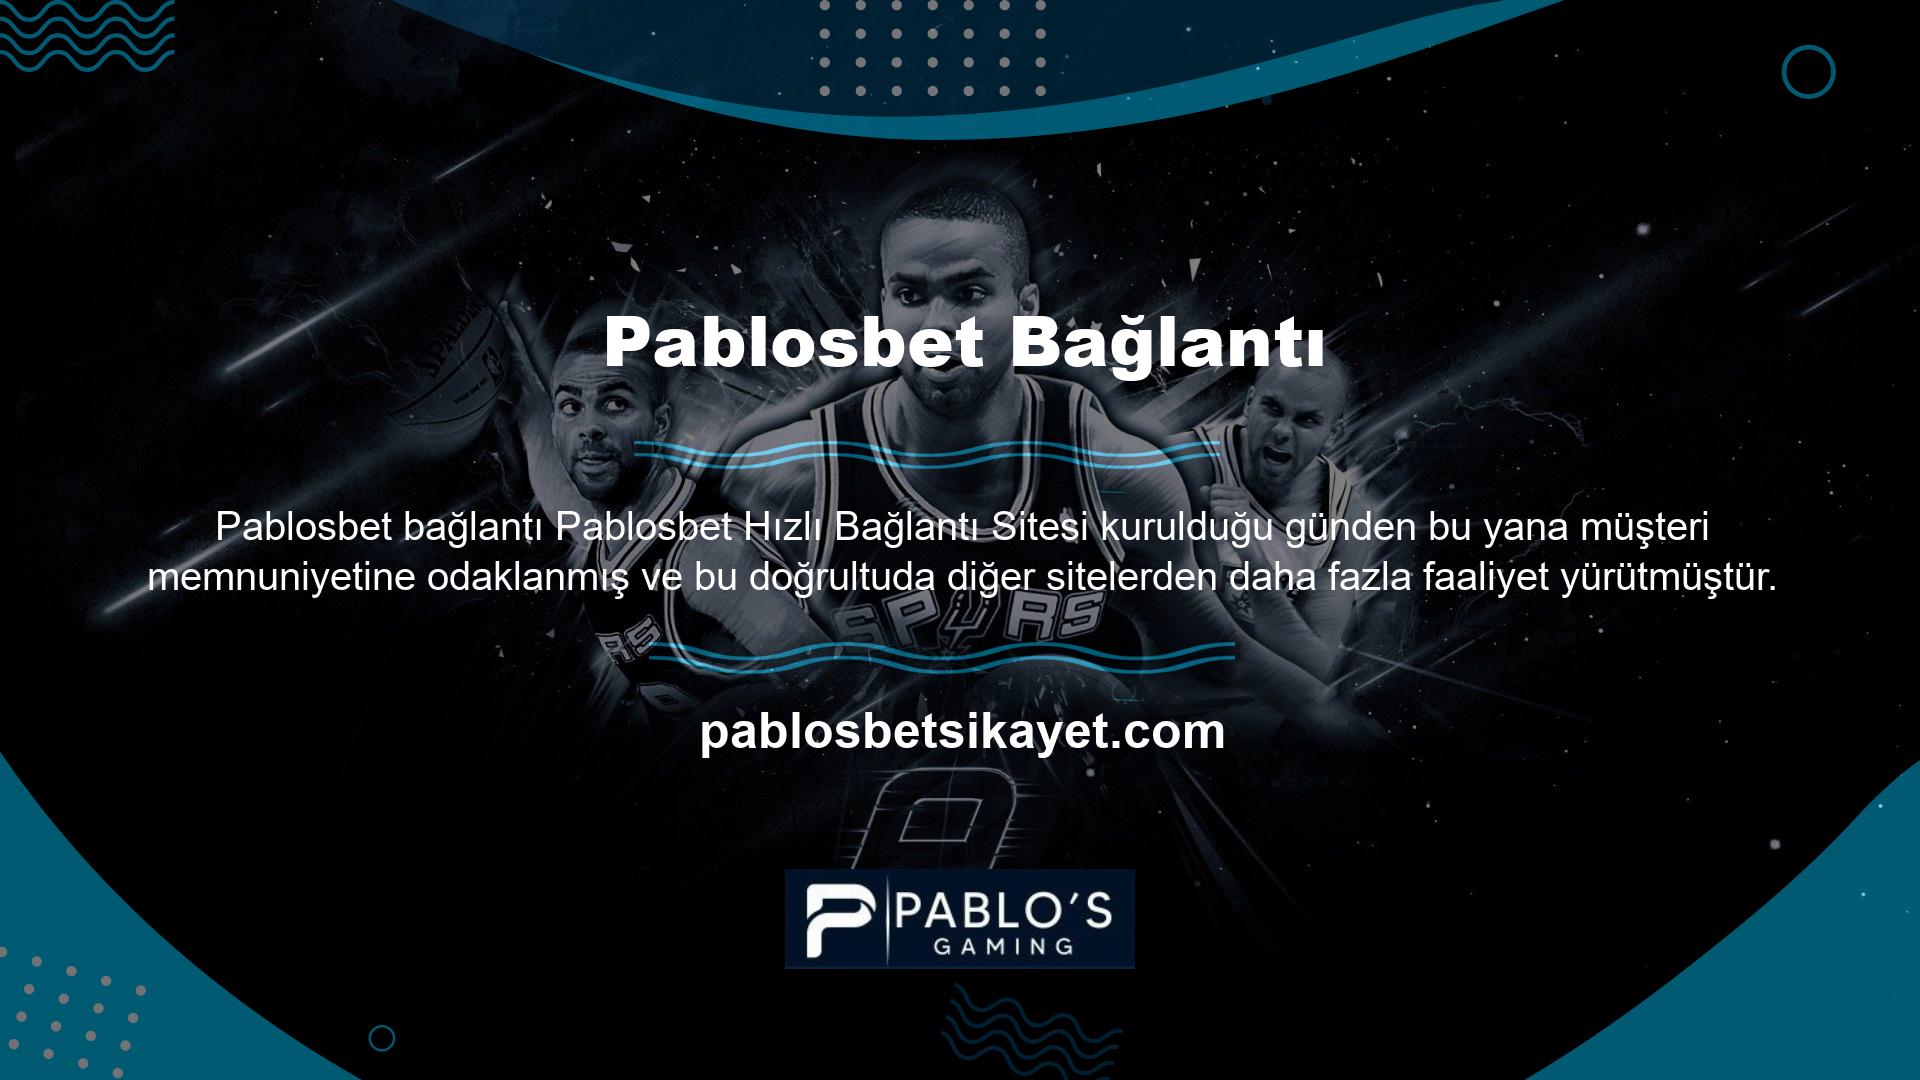 Lisans yapısı ve sözleşme sertifikası ile kullanıcılarını karşılayan site, Pablosbet TV, Casino, Canlı Casino ve daha birçok alan tarafından işletilmekte ve güvenilmektedir